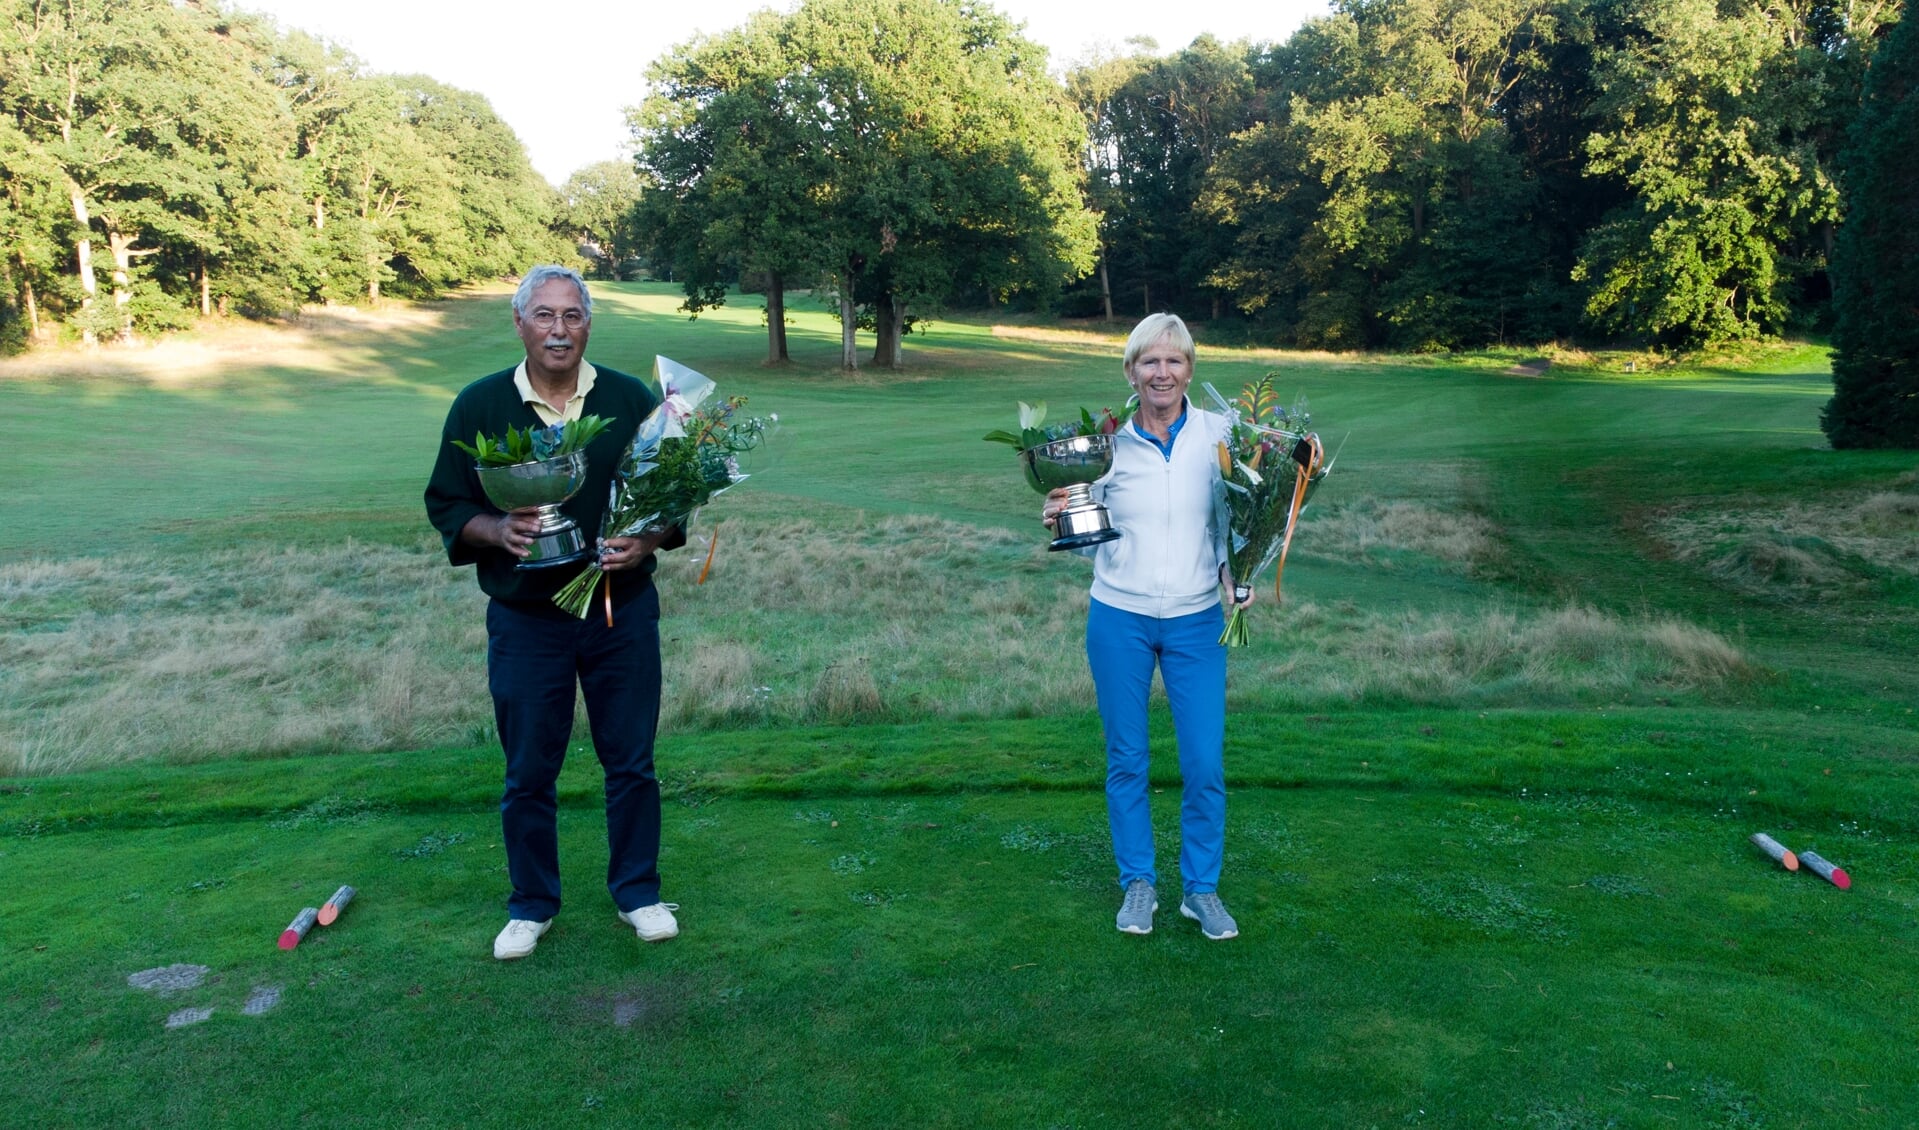 De trotse winnaars Jeanne Hazelhekke en Rolf Esser